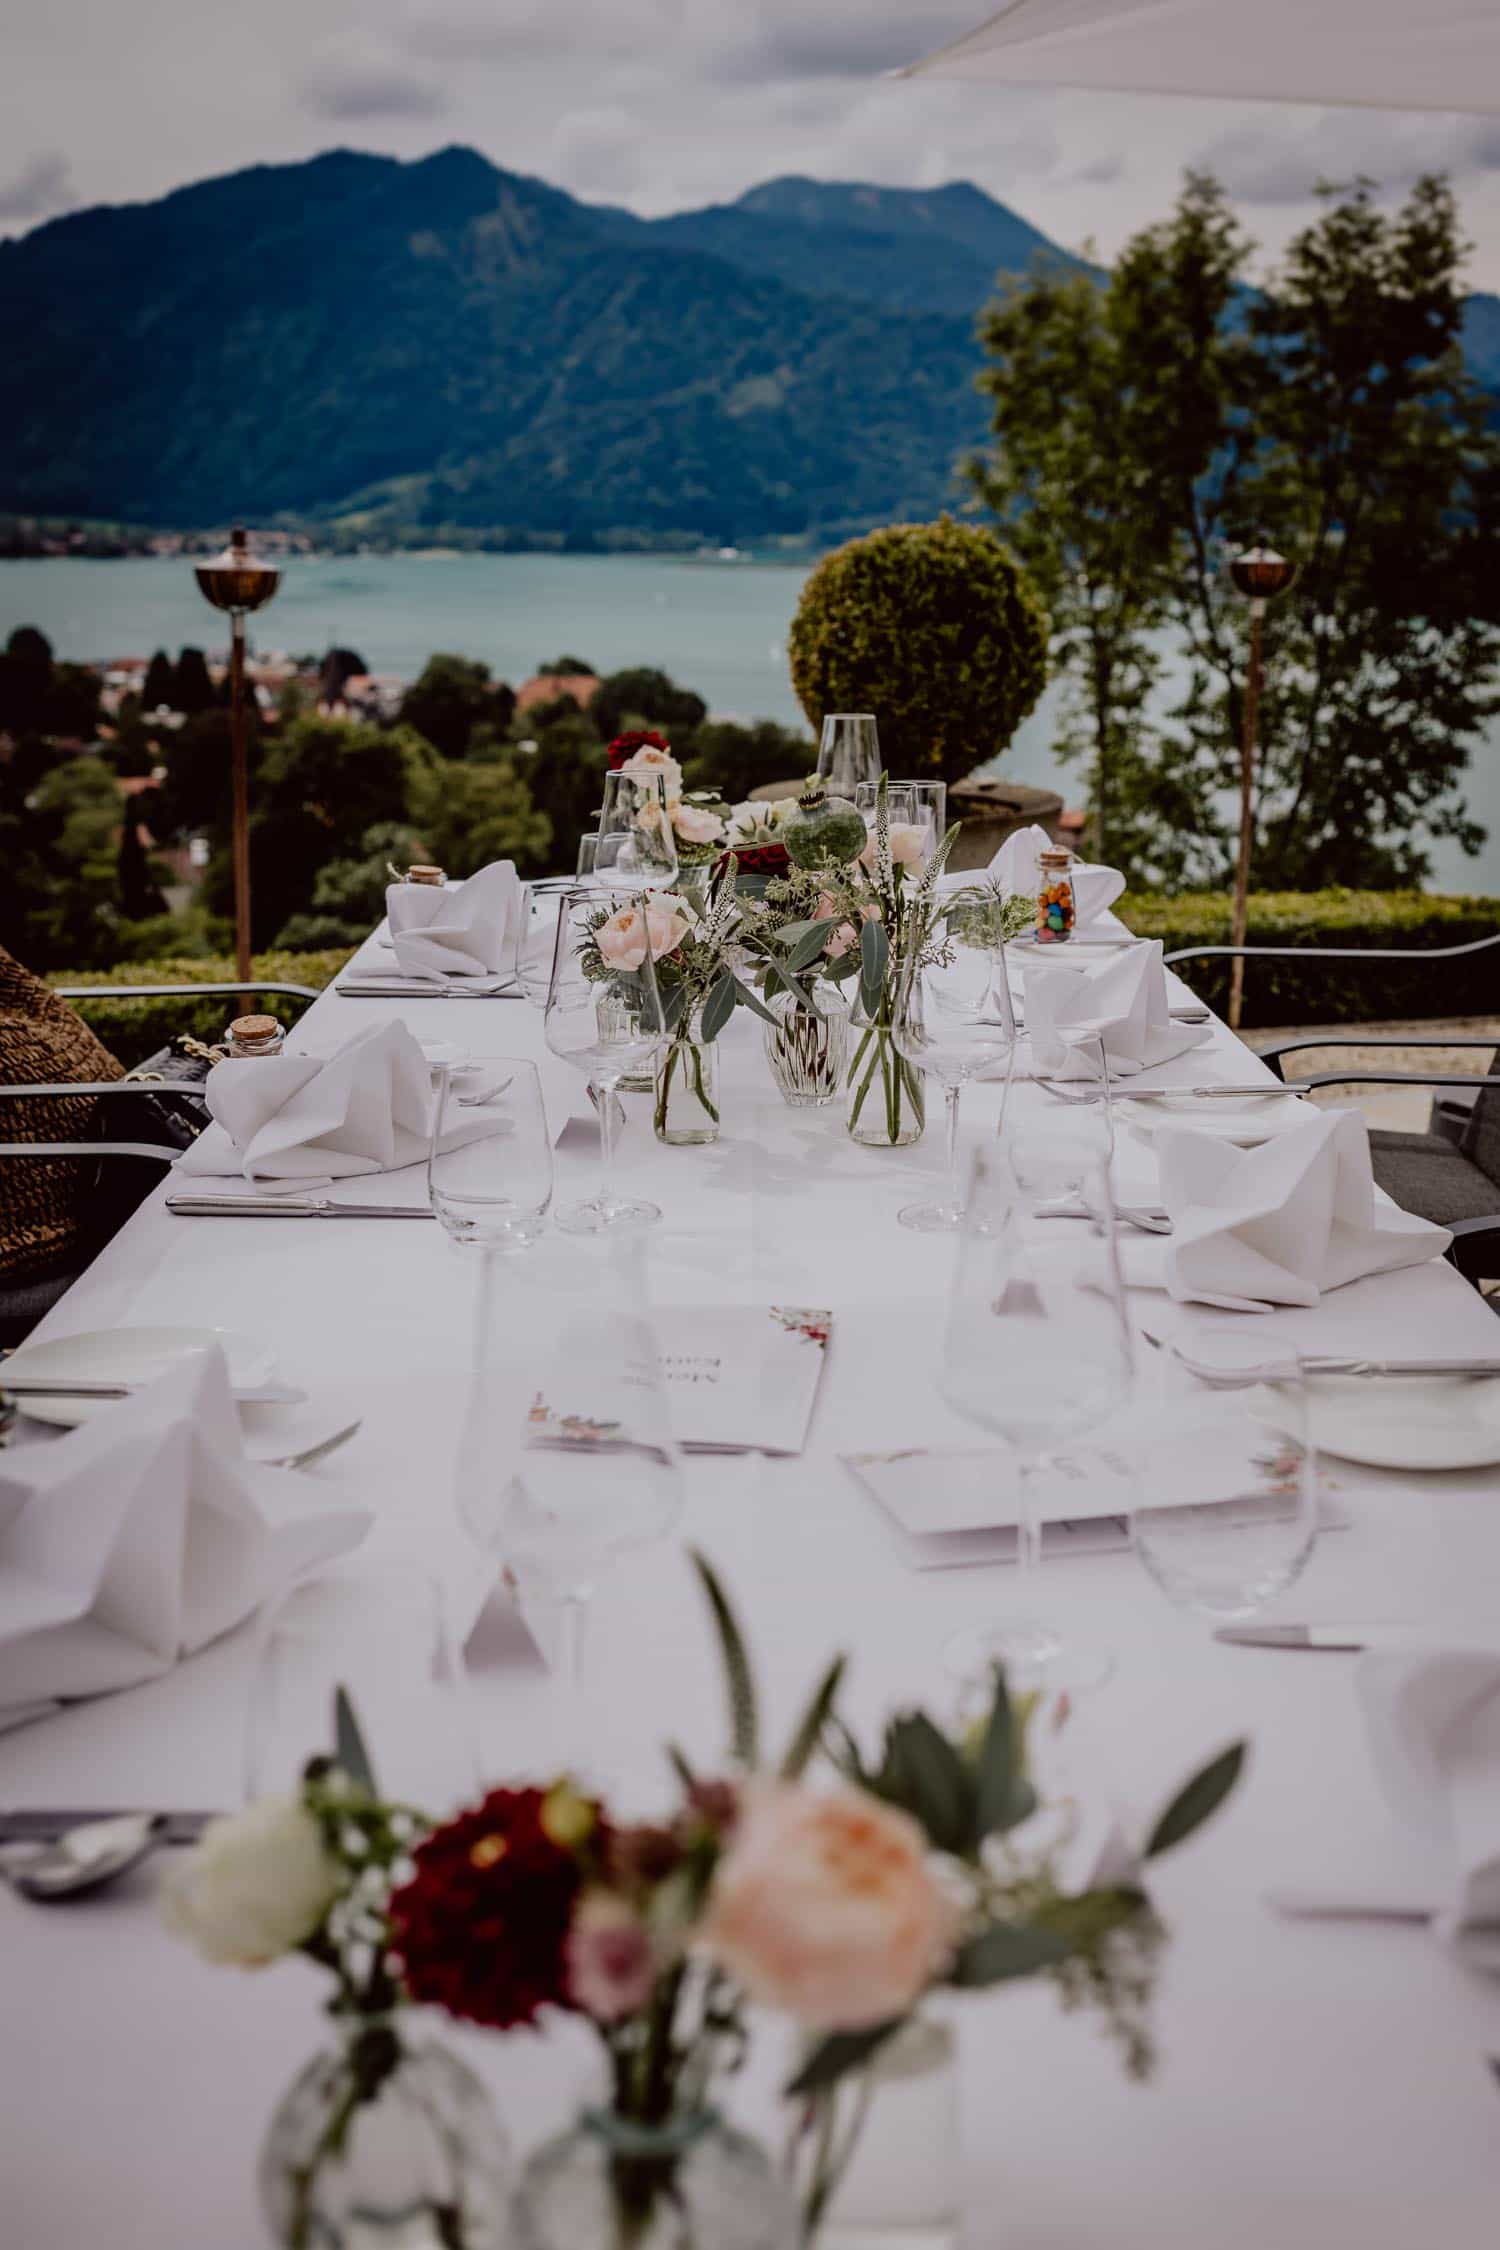 Dekorierter Hochzeitstisch im Das Tegernsee mit Blick auf den See